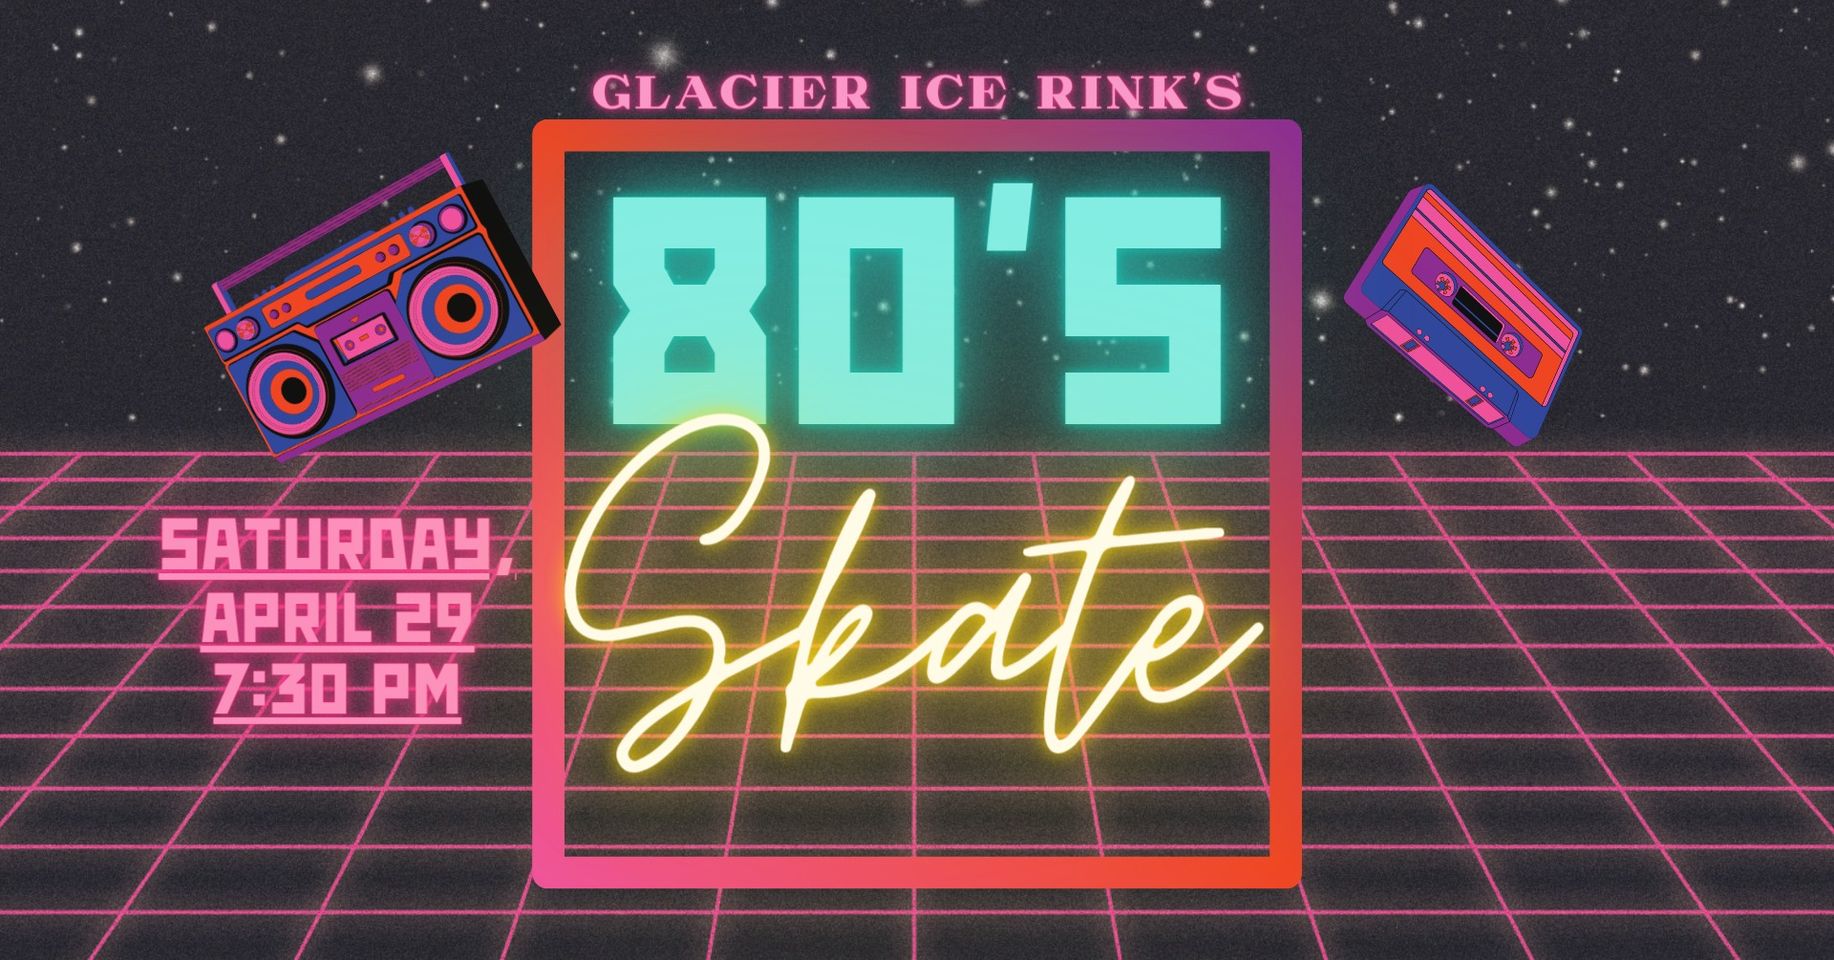 80's Skate at Glacier Ice Rink in Missoula on Saturday, April 29, 2023